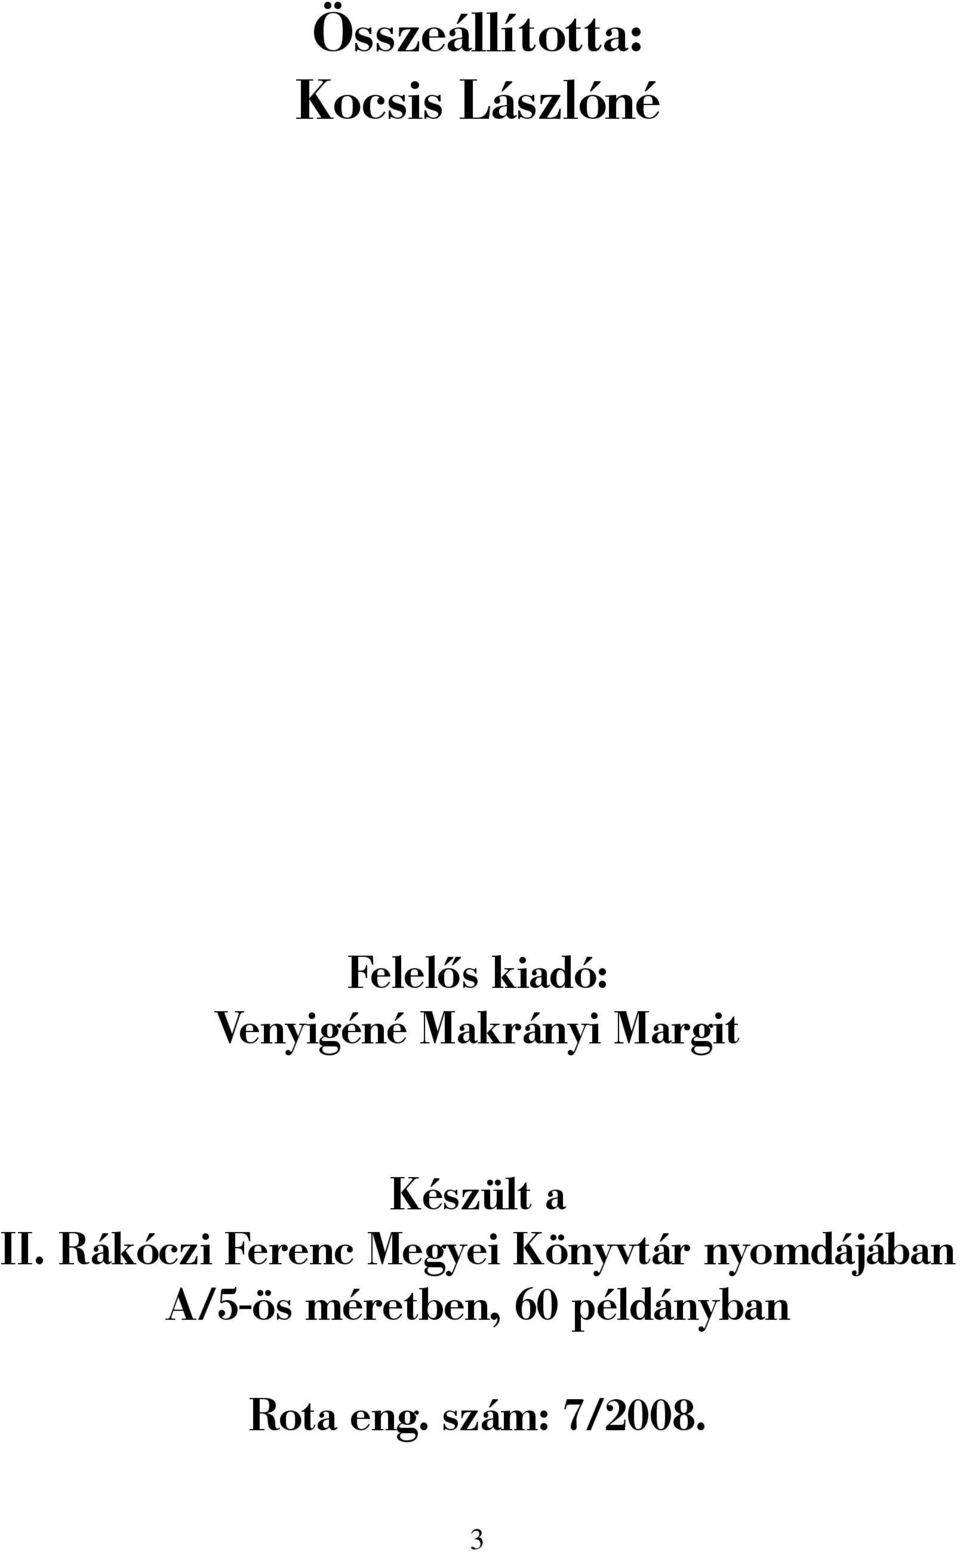 Rákóczi Ferenc Megyei Könyvtár nyomdájában